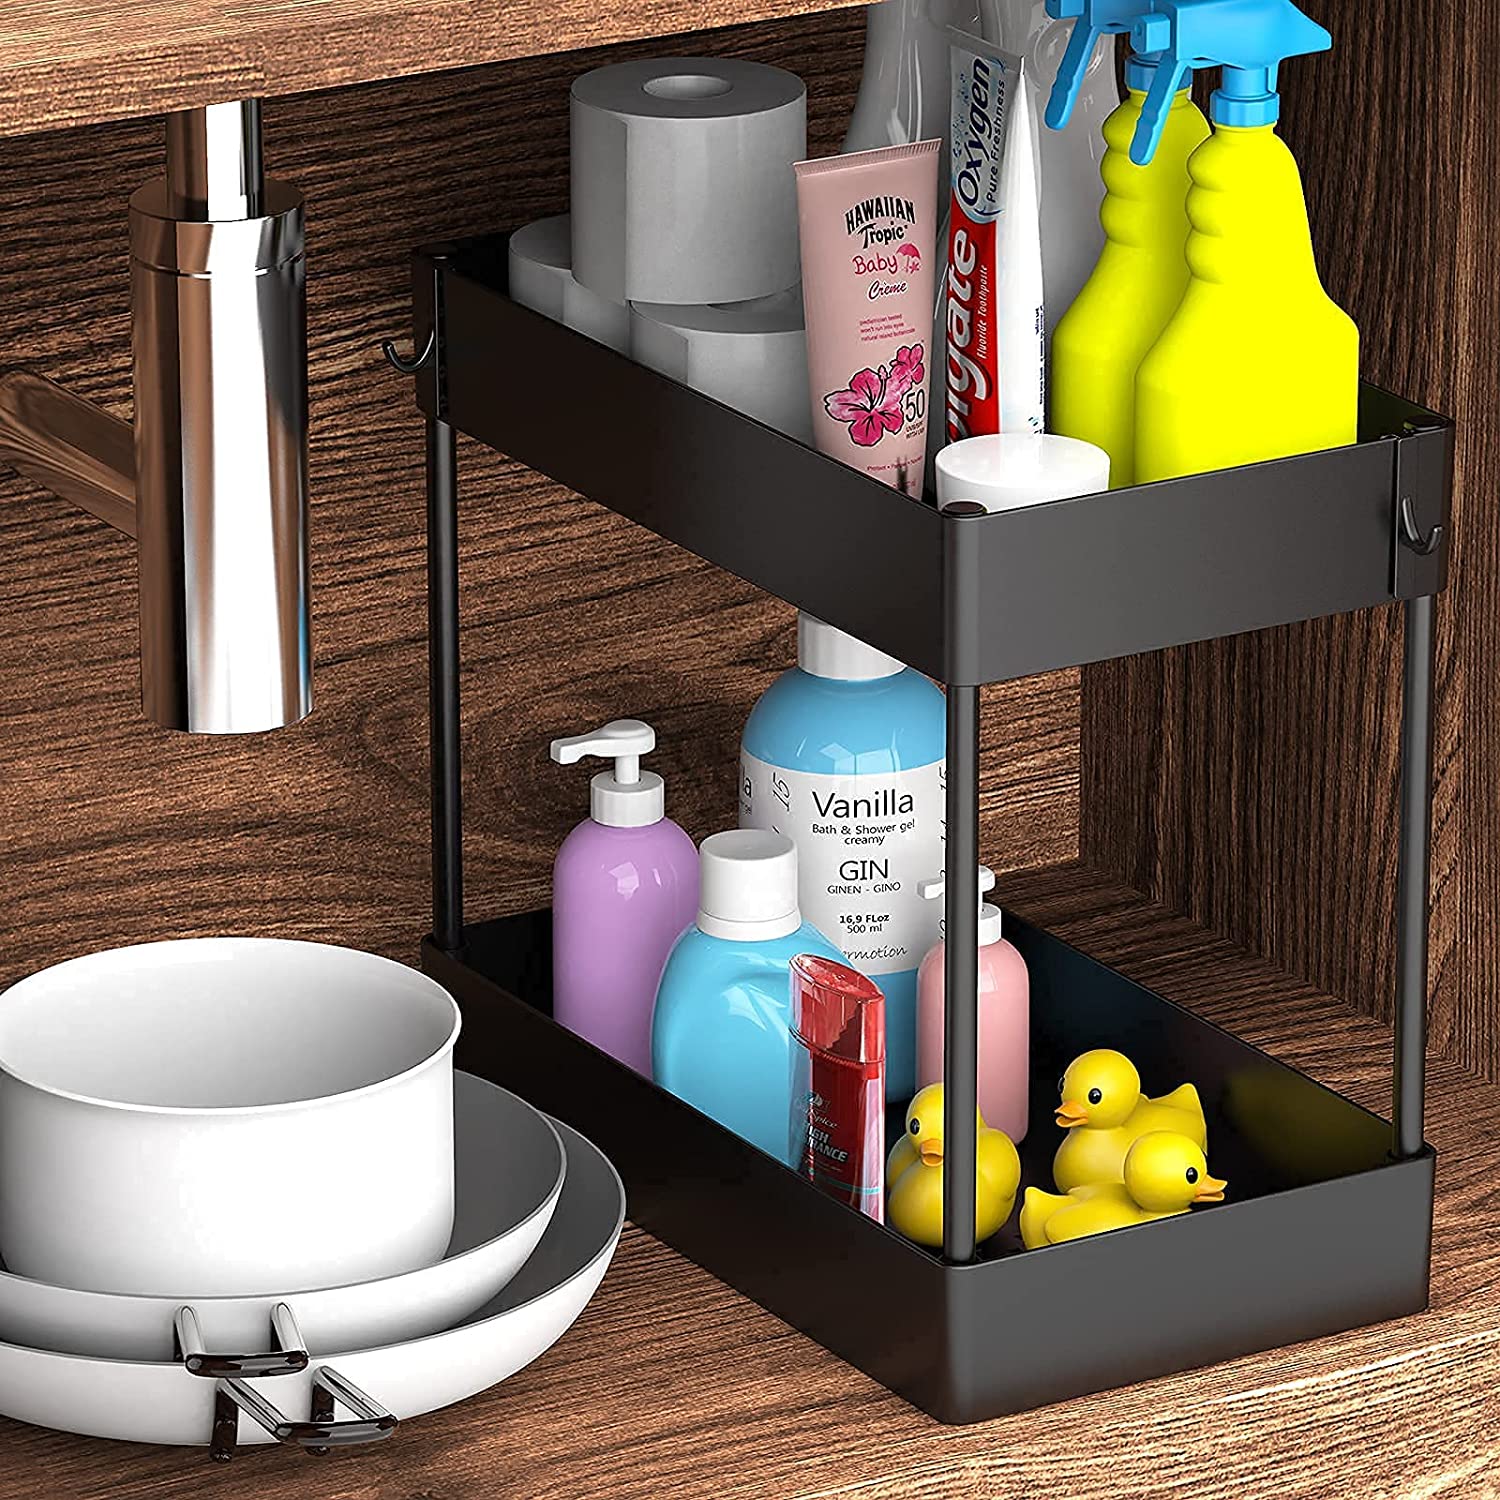  PUILUO Under Sliding Cabinet Basket Organizer, 2 Tier Under  Sink Organizers Black Under Sink Storage for Bathroom Kitchen : Home &  Kitchen